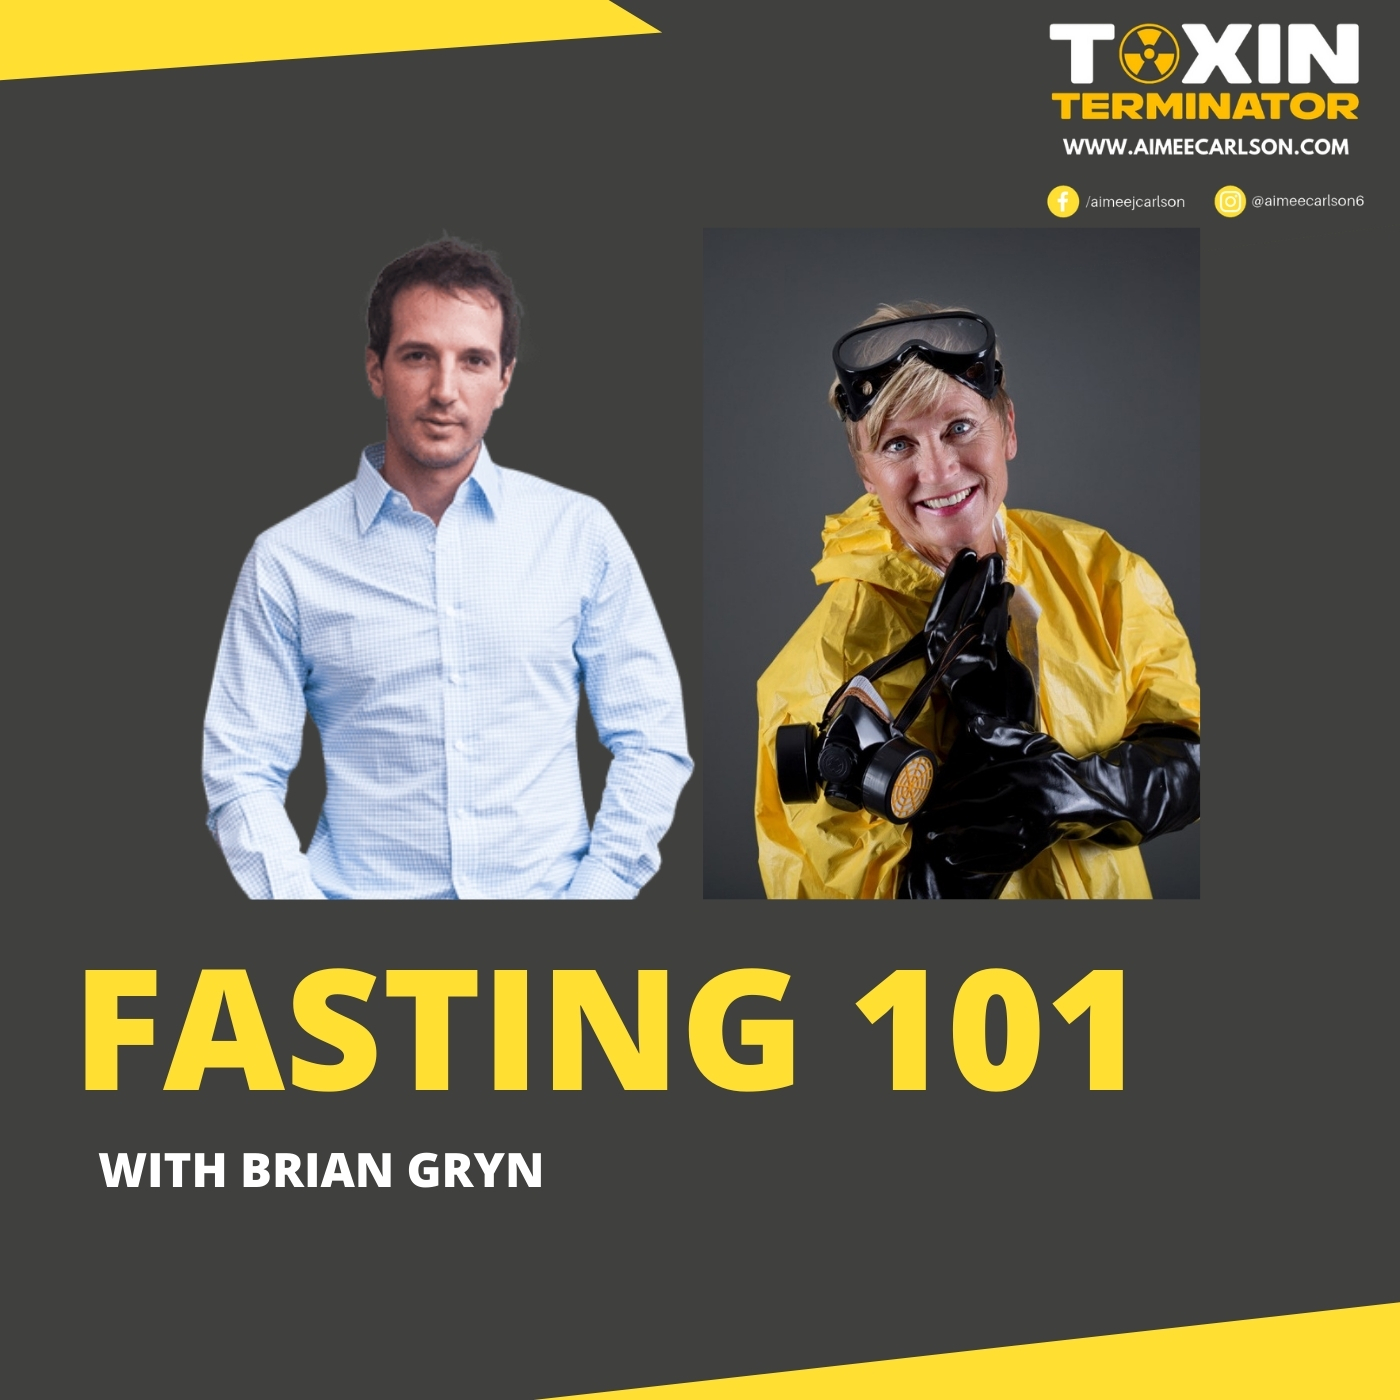 Fasting 101 with Brian Gryn